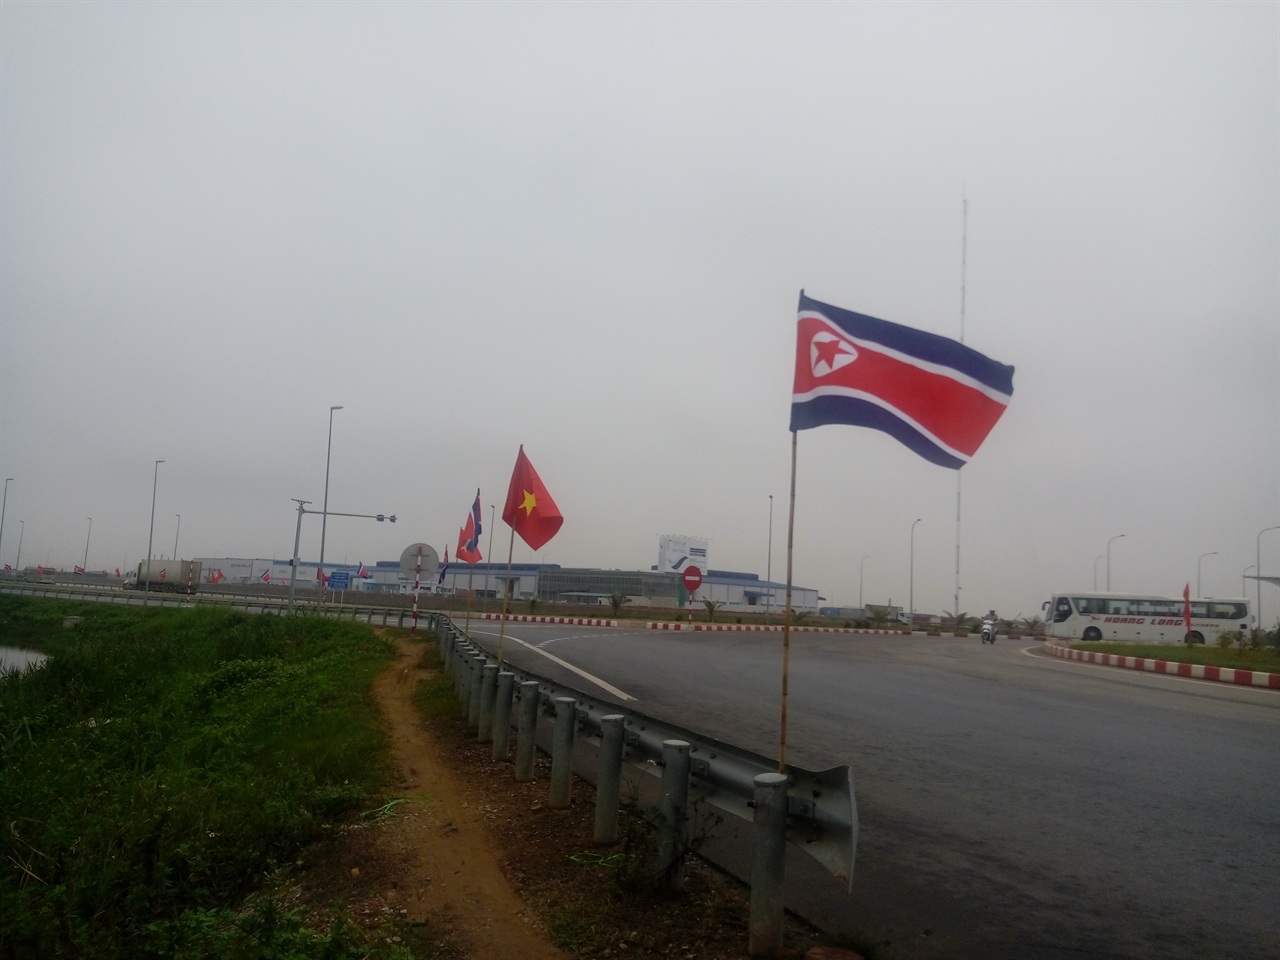 빈패스트 공장으로 가는 진입로에 북한 국기인 인공기가 걸려 있다.